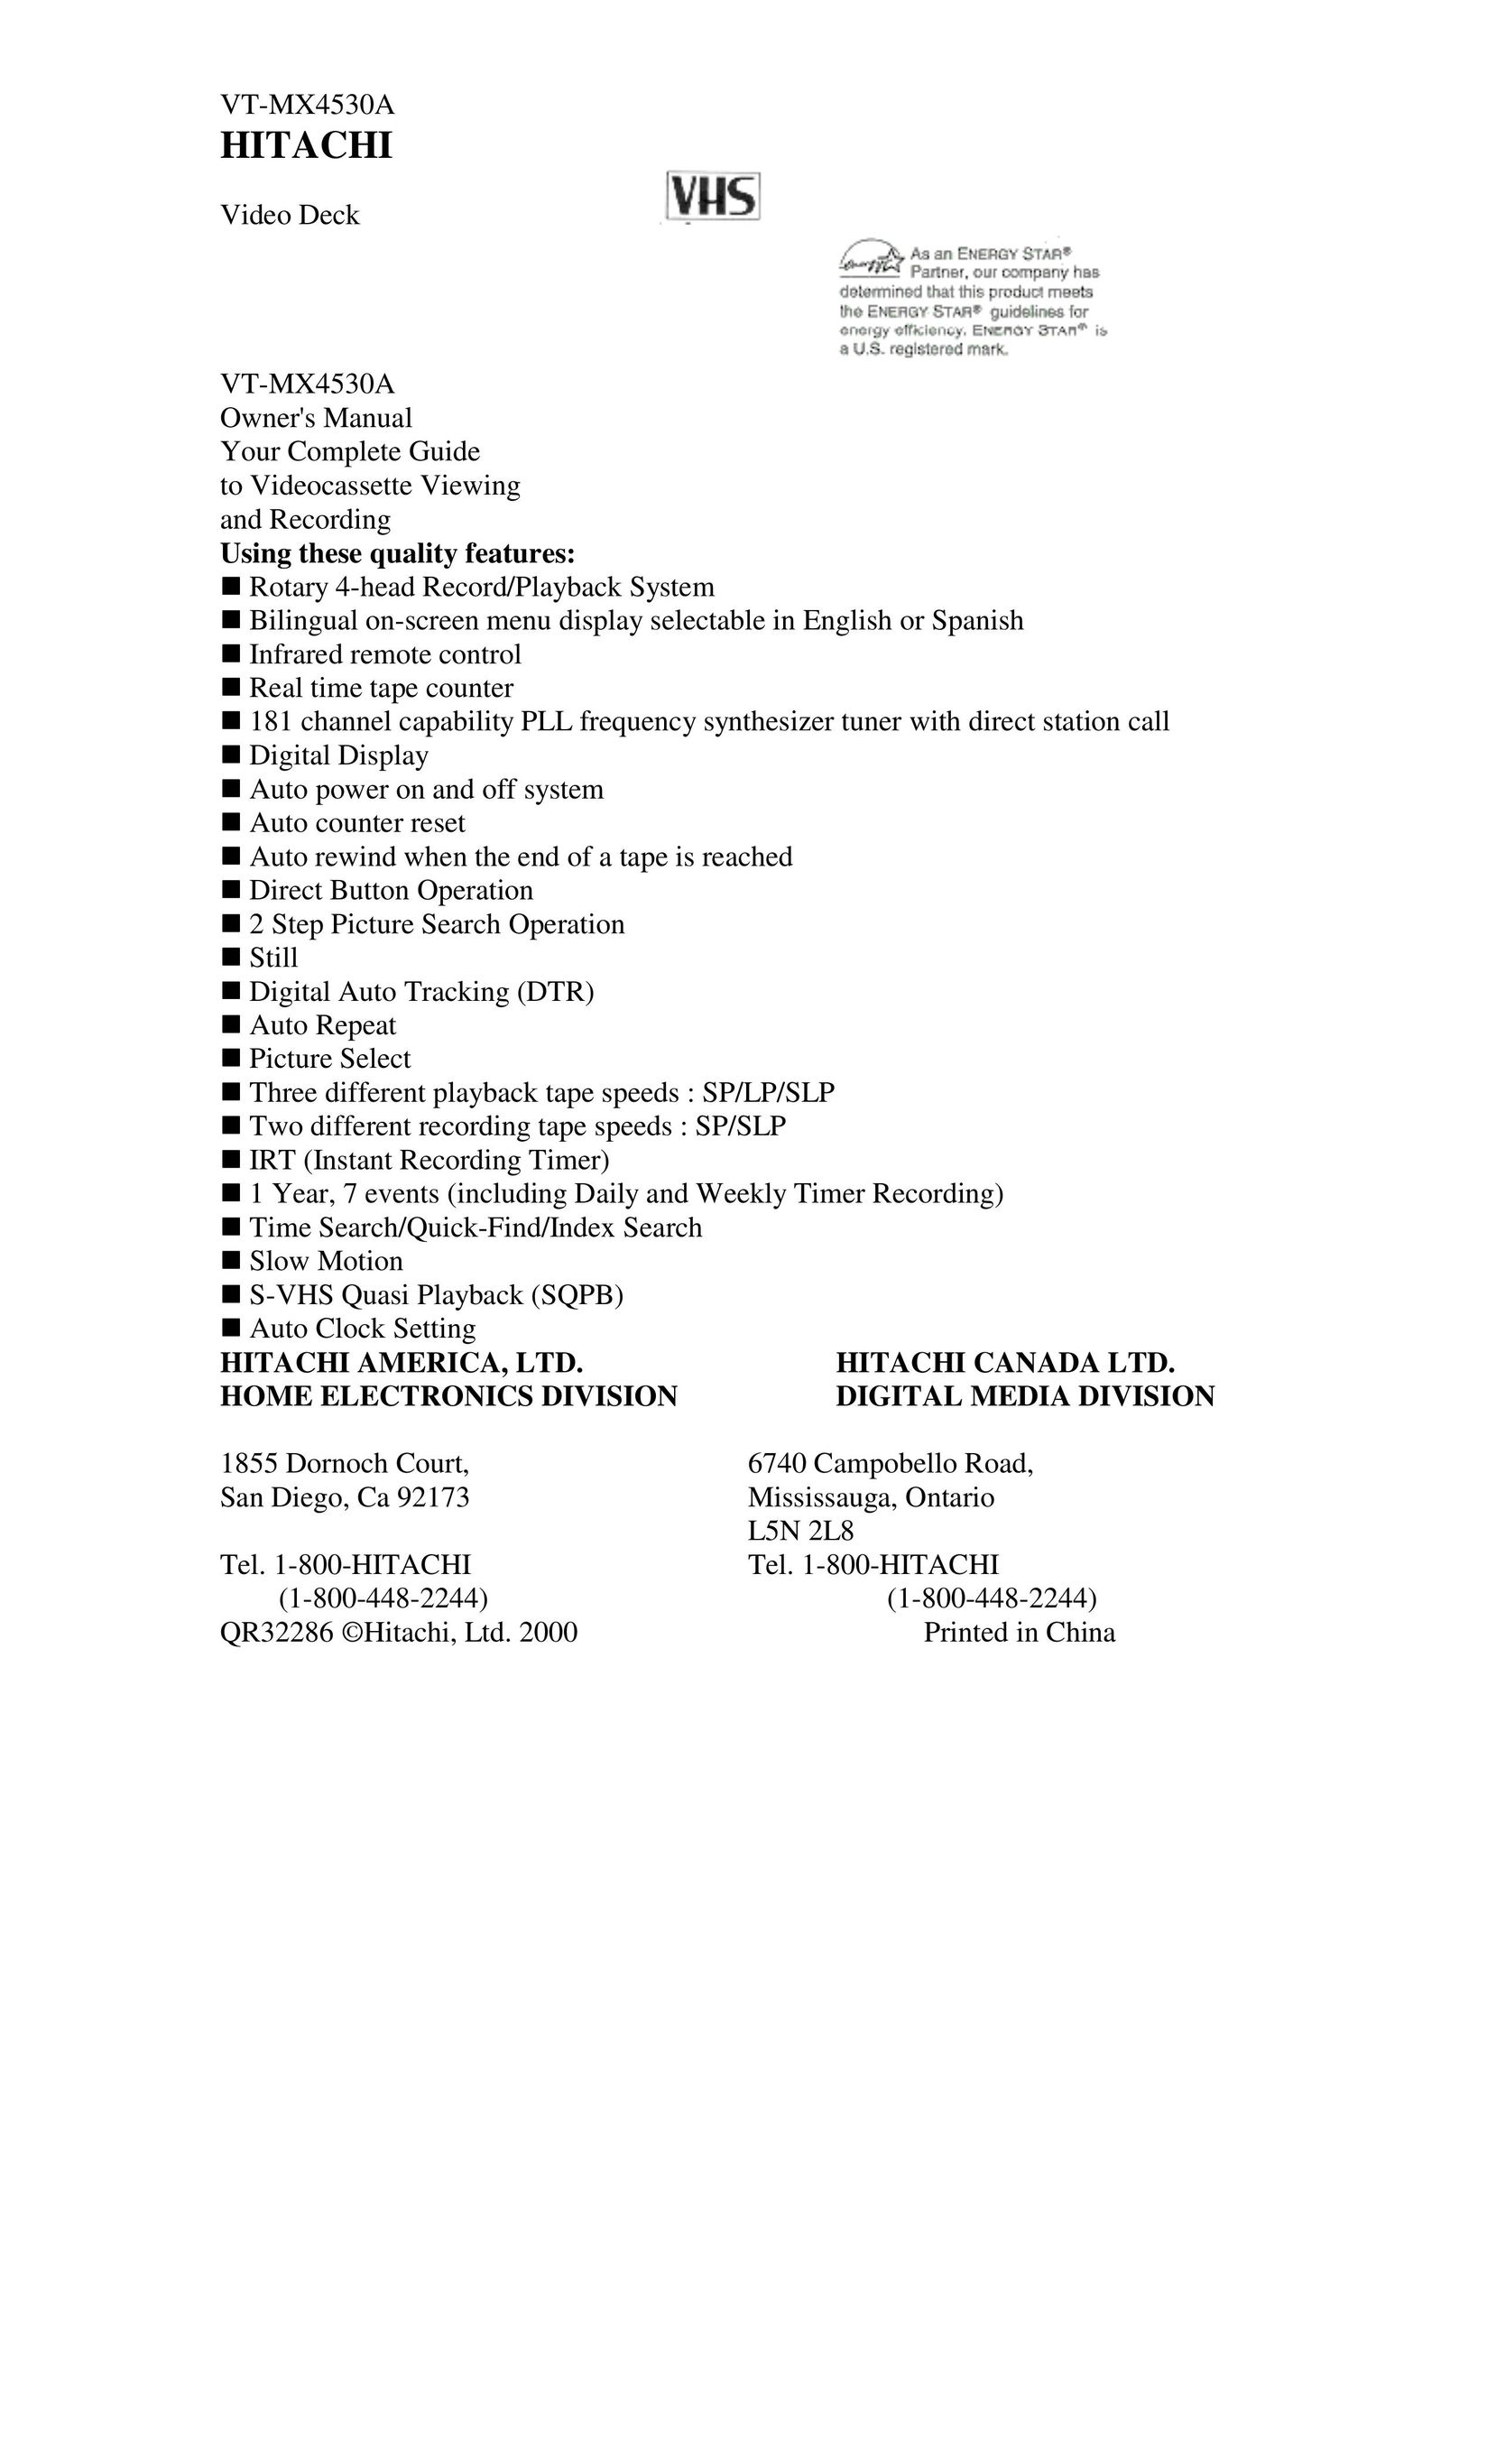 Hitachi VT-MX4530A VCR User Manual